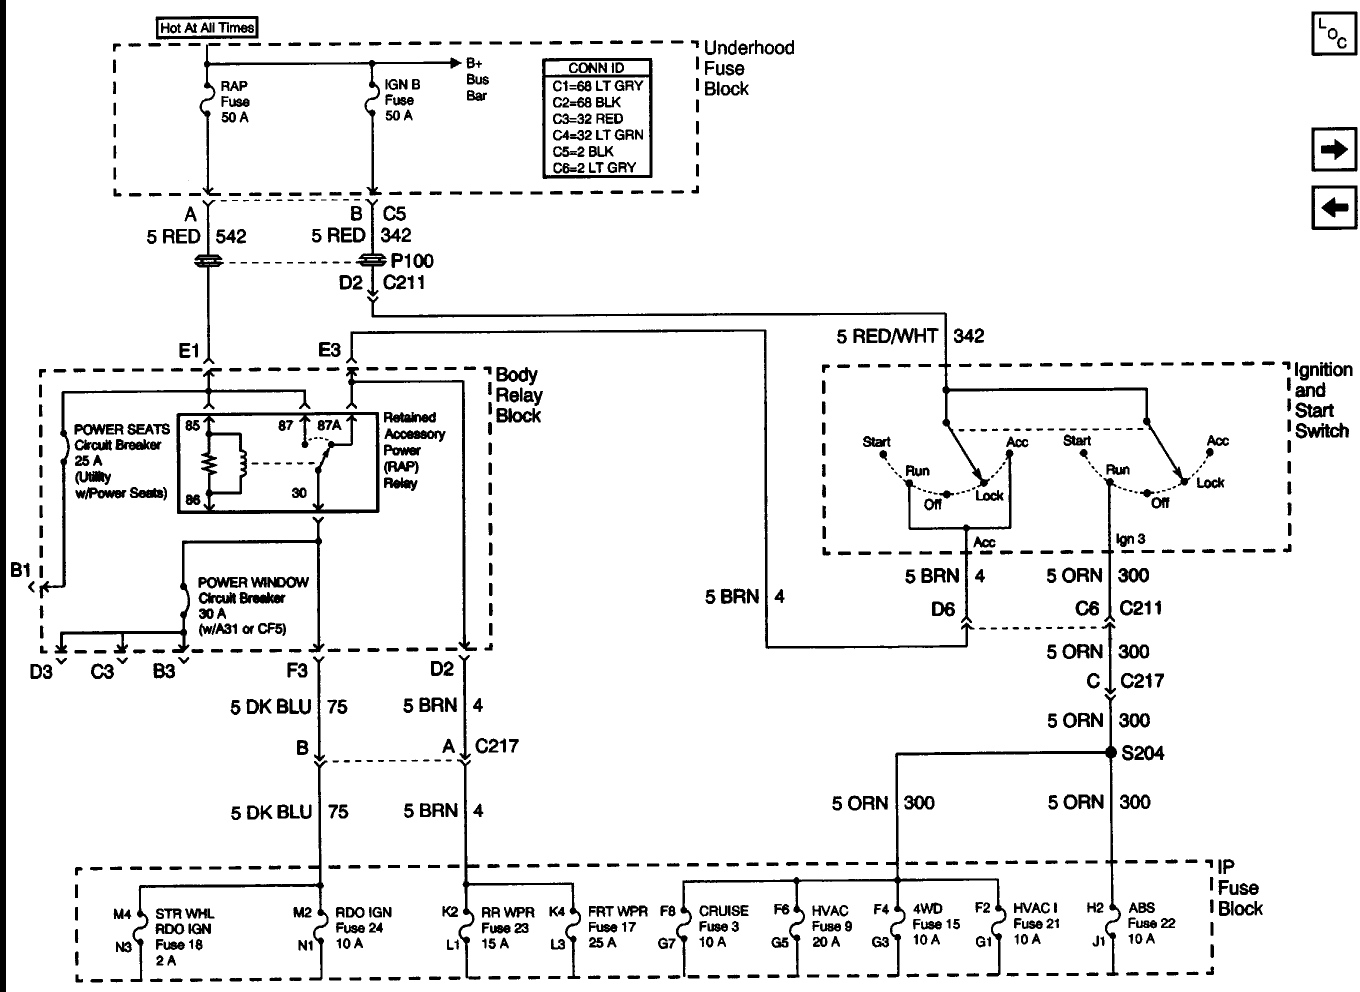 Anatomy Of The Ignition Switch Blazer